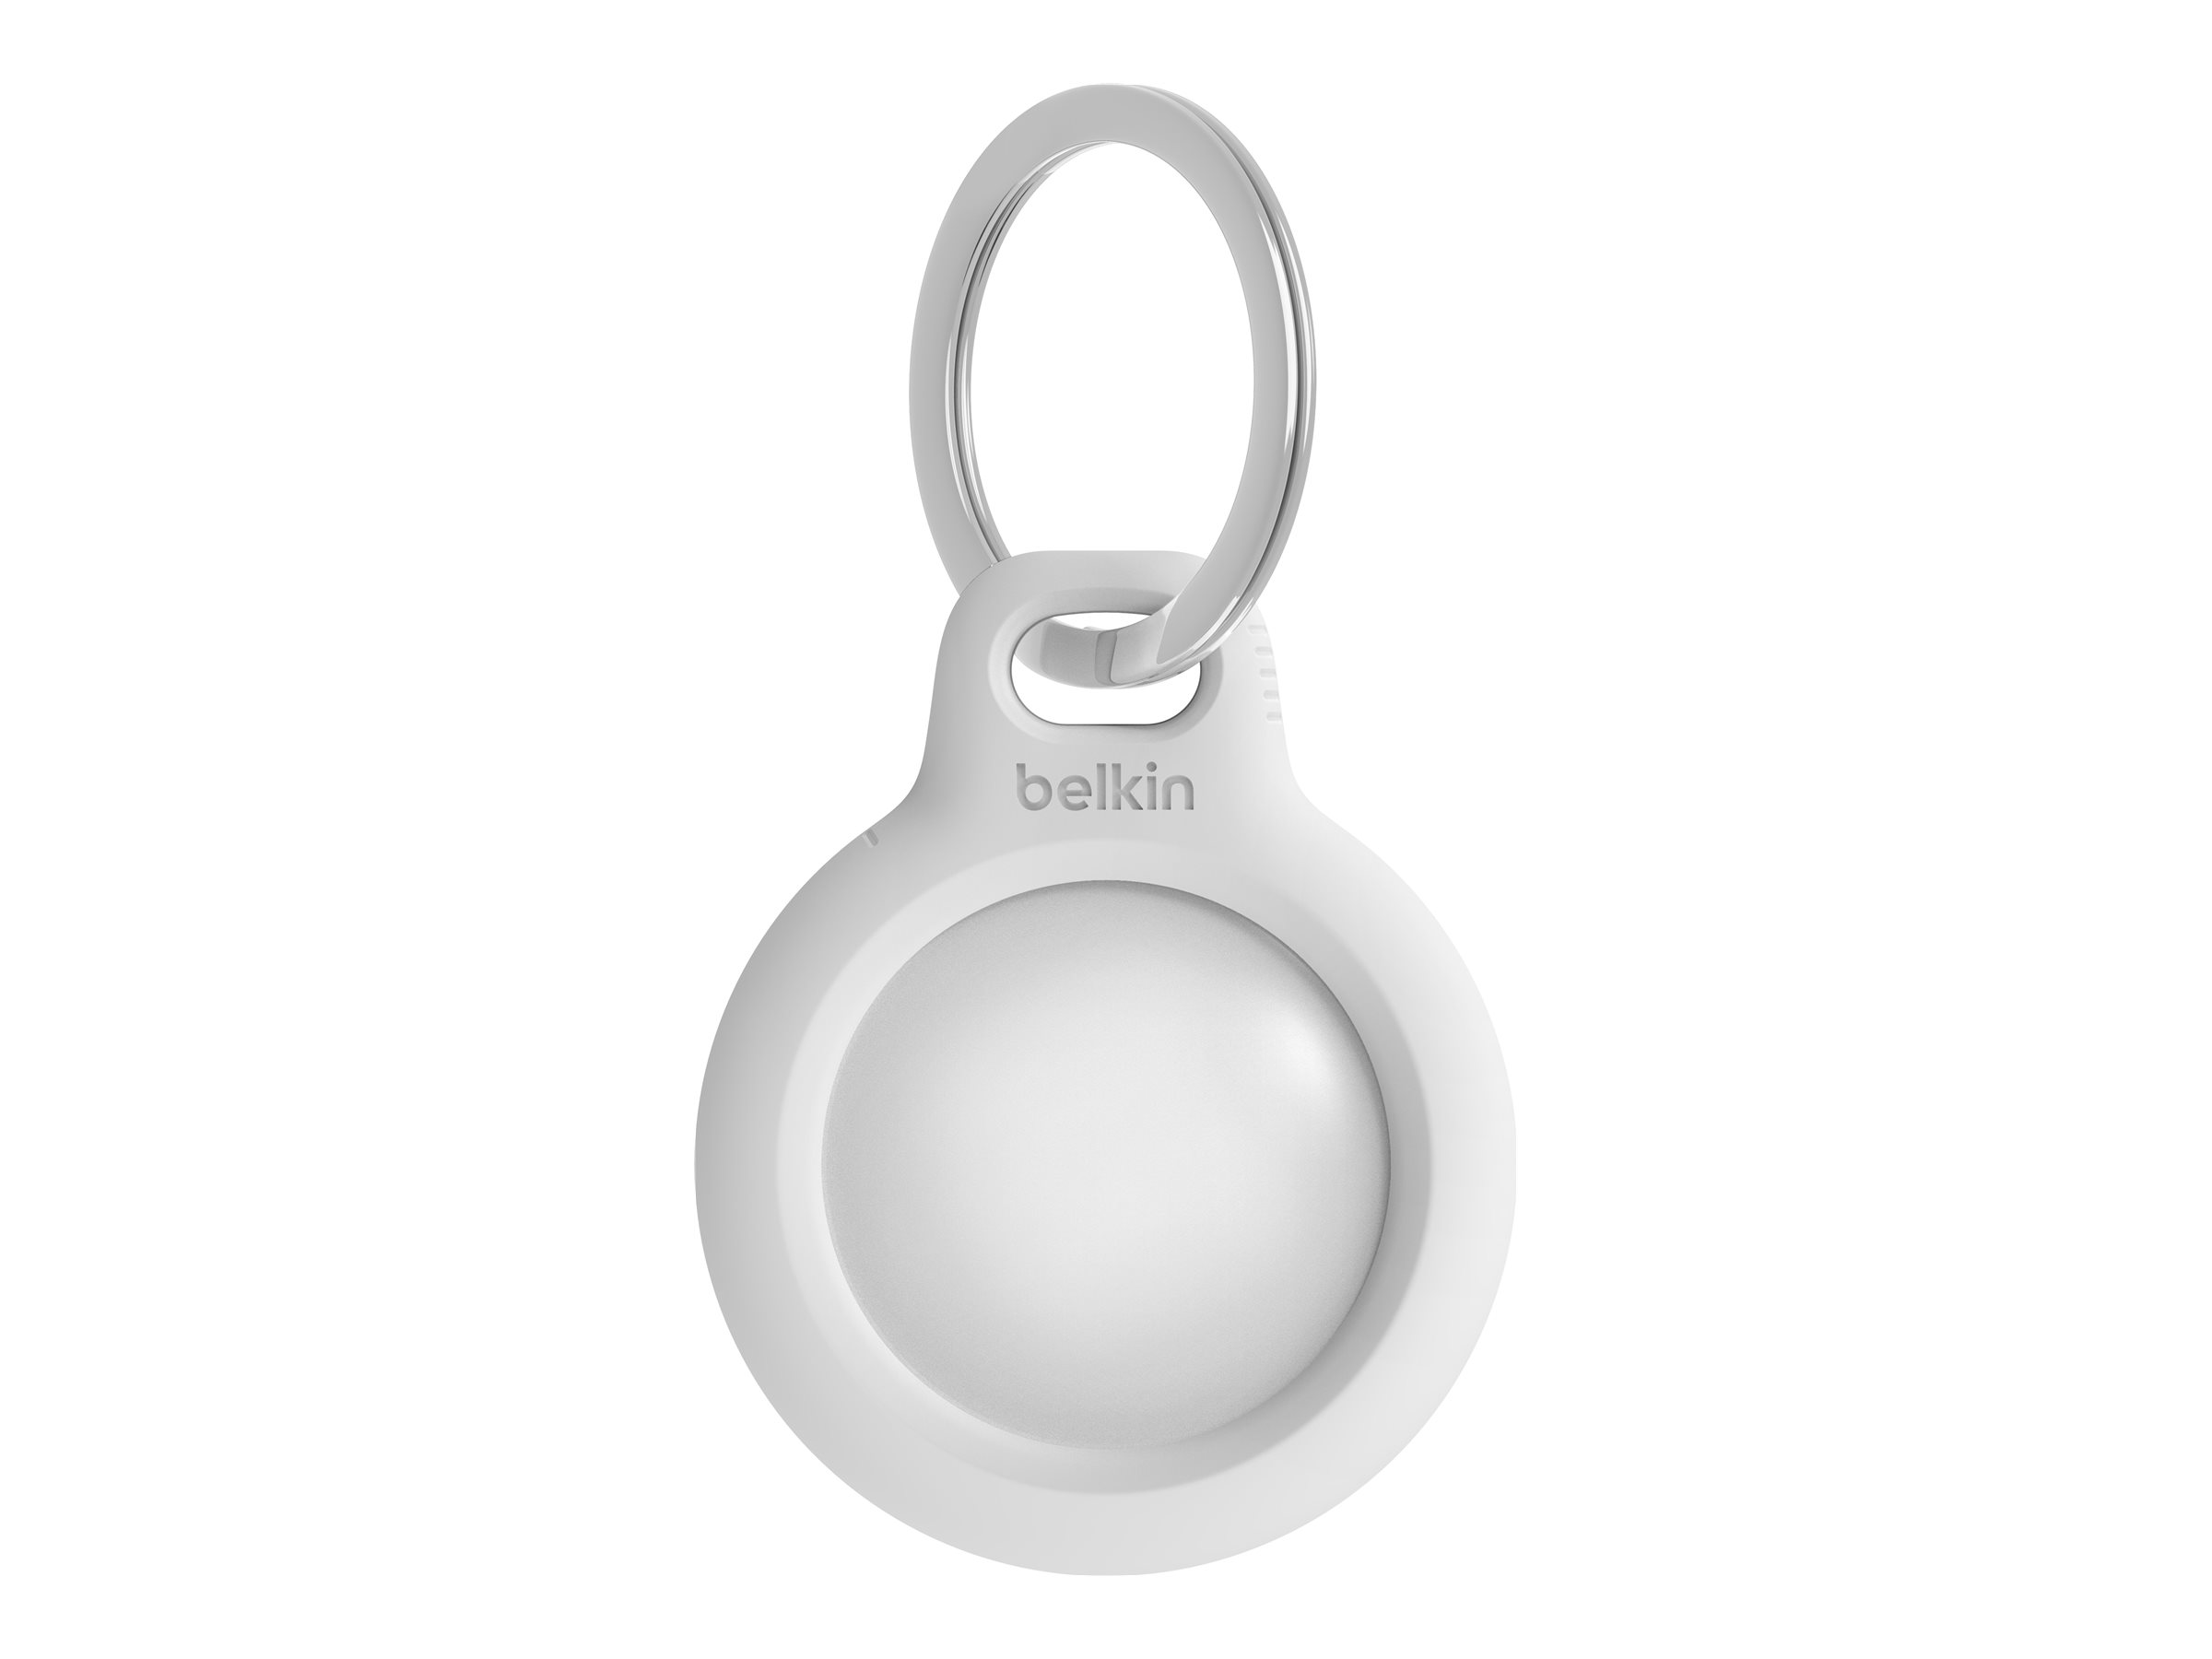 Belkin - Support sécurisé pour étiquette Bluetooth anti-perte - blanc - pour Apple AirTag - F8W973BTWHT - accessoires divers